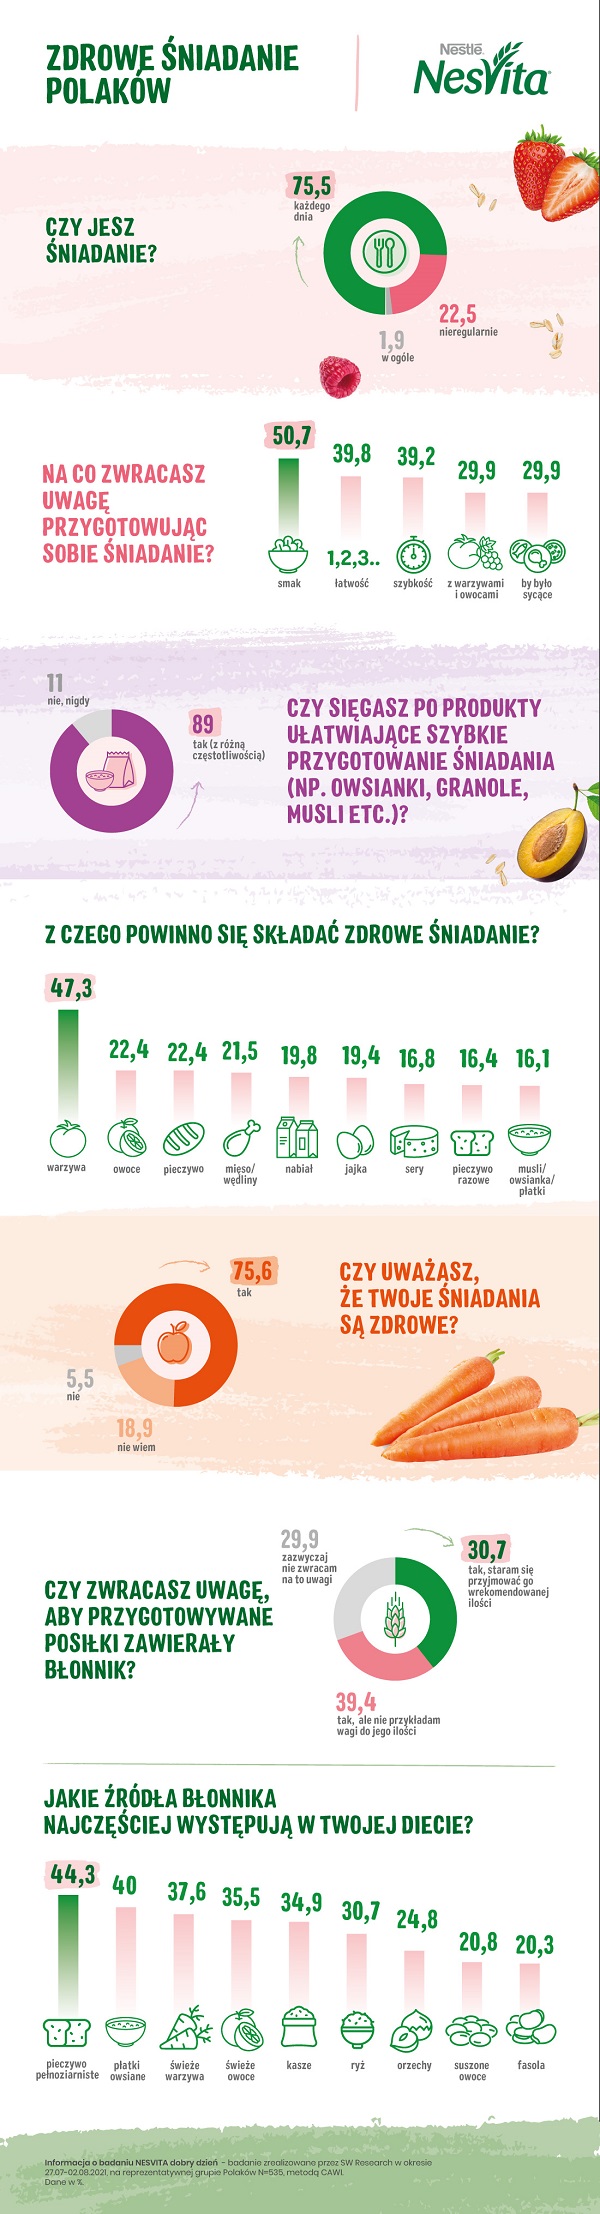 Zdrowe niadanie Polakw-infografika (002)